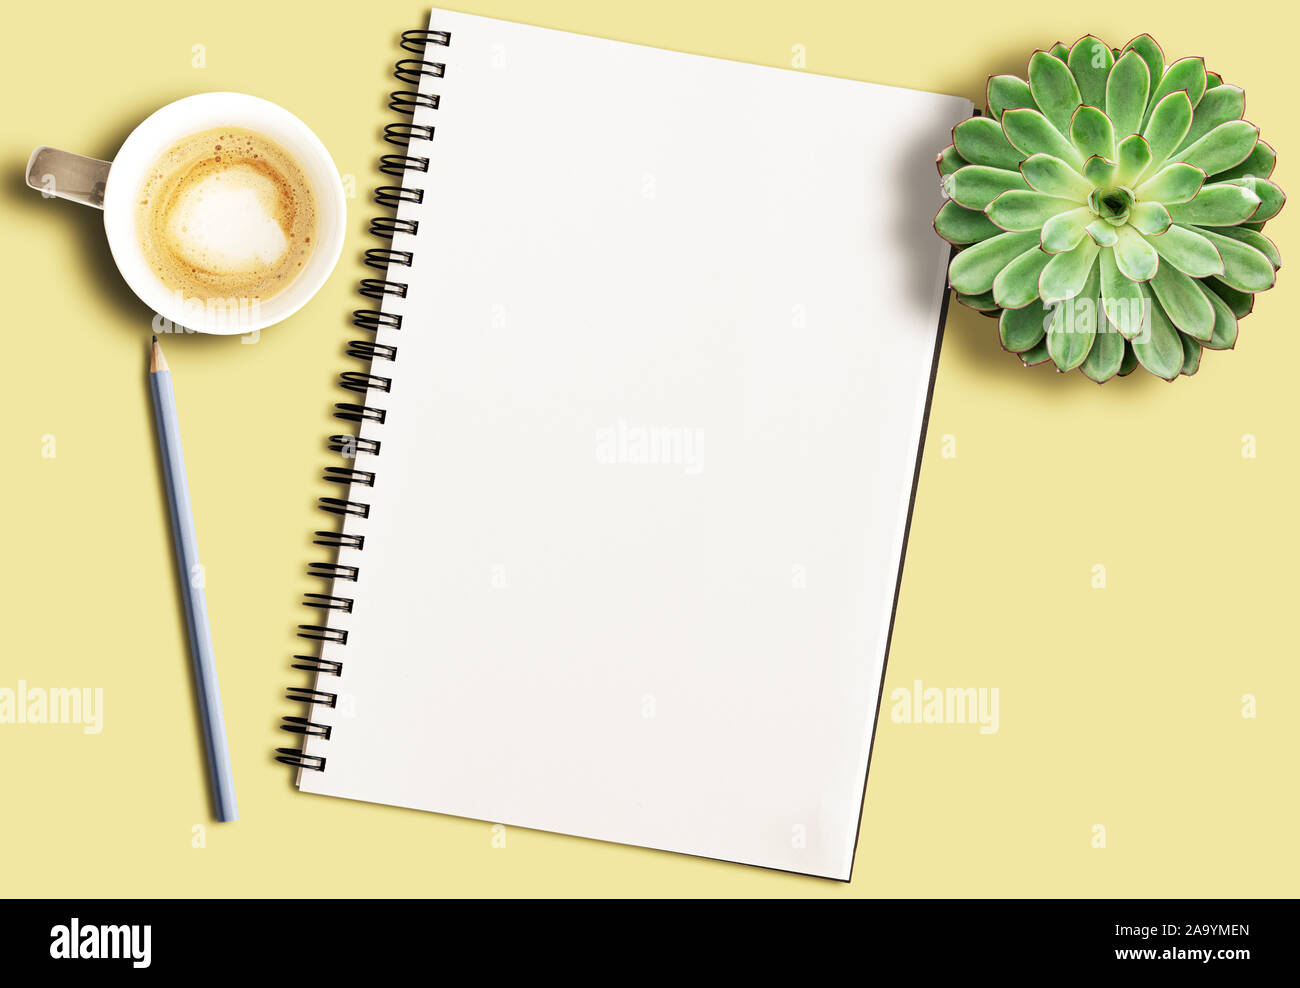 Leere Spirale Notizblock auf gelb Schreibtisch mit Bleistift, Topfpflanzen sukkulente Pflanze und Coffee Mug Stockfoto